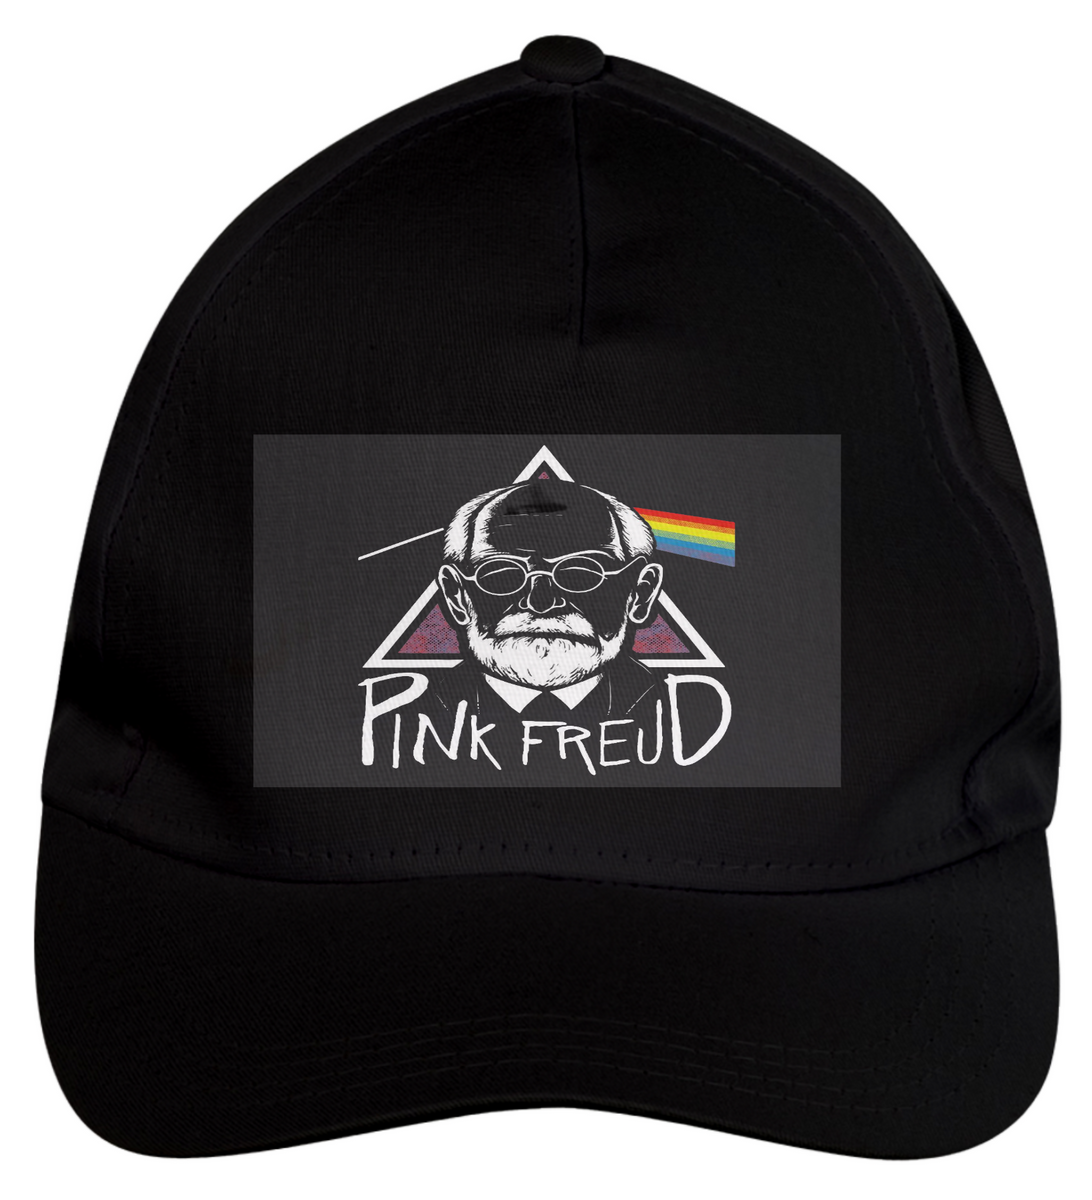 Nome do produto: Pink Freud